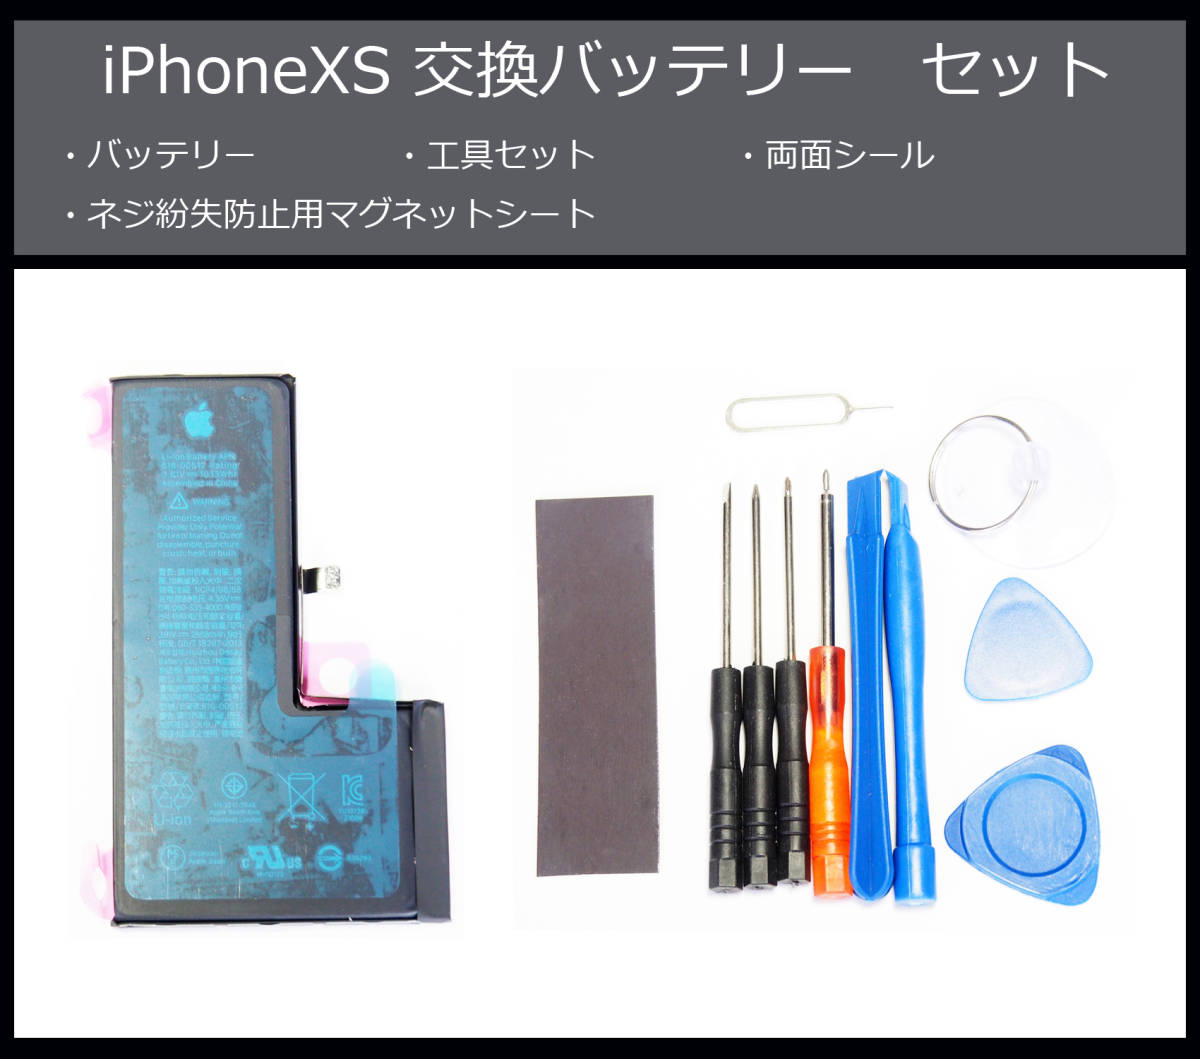 13924円 【在庫あり】 iPhonexs 本体